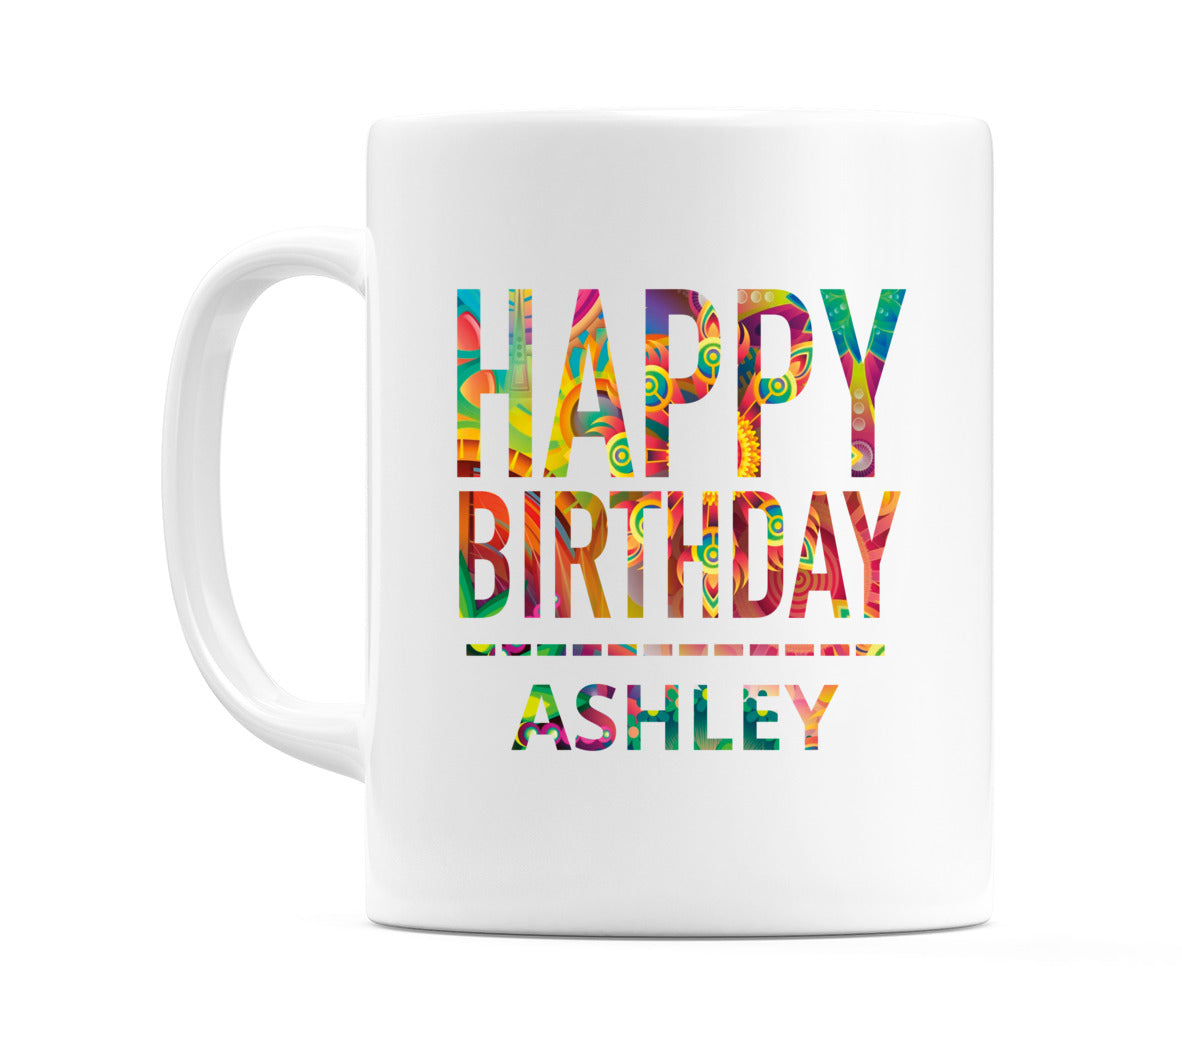 Happy Birthday Ashley (Tie Dye Effect) Mug Cup by WeDoMugs